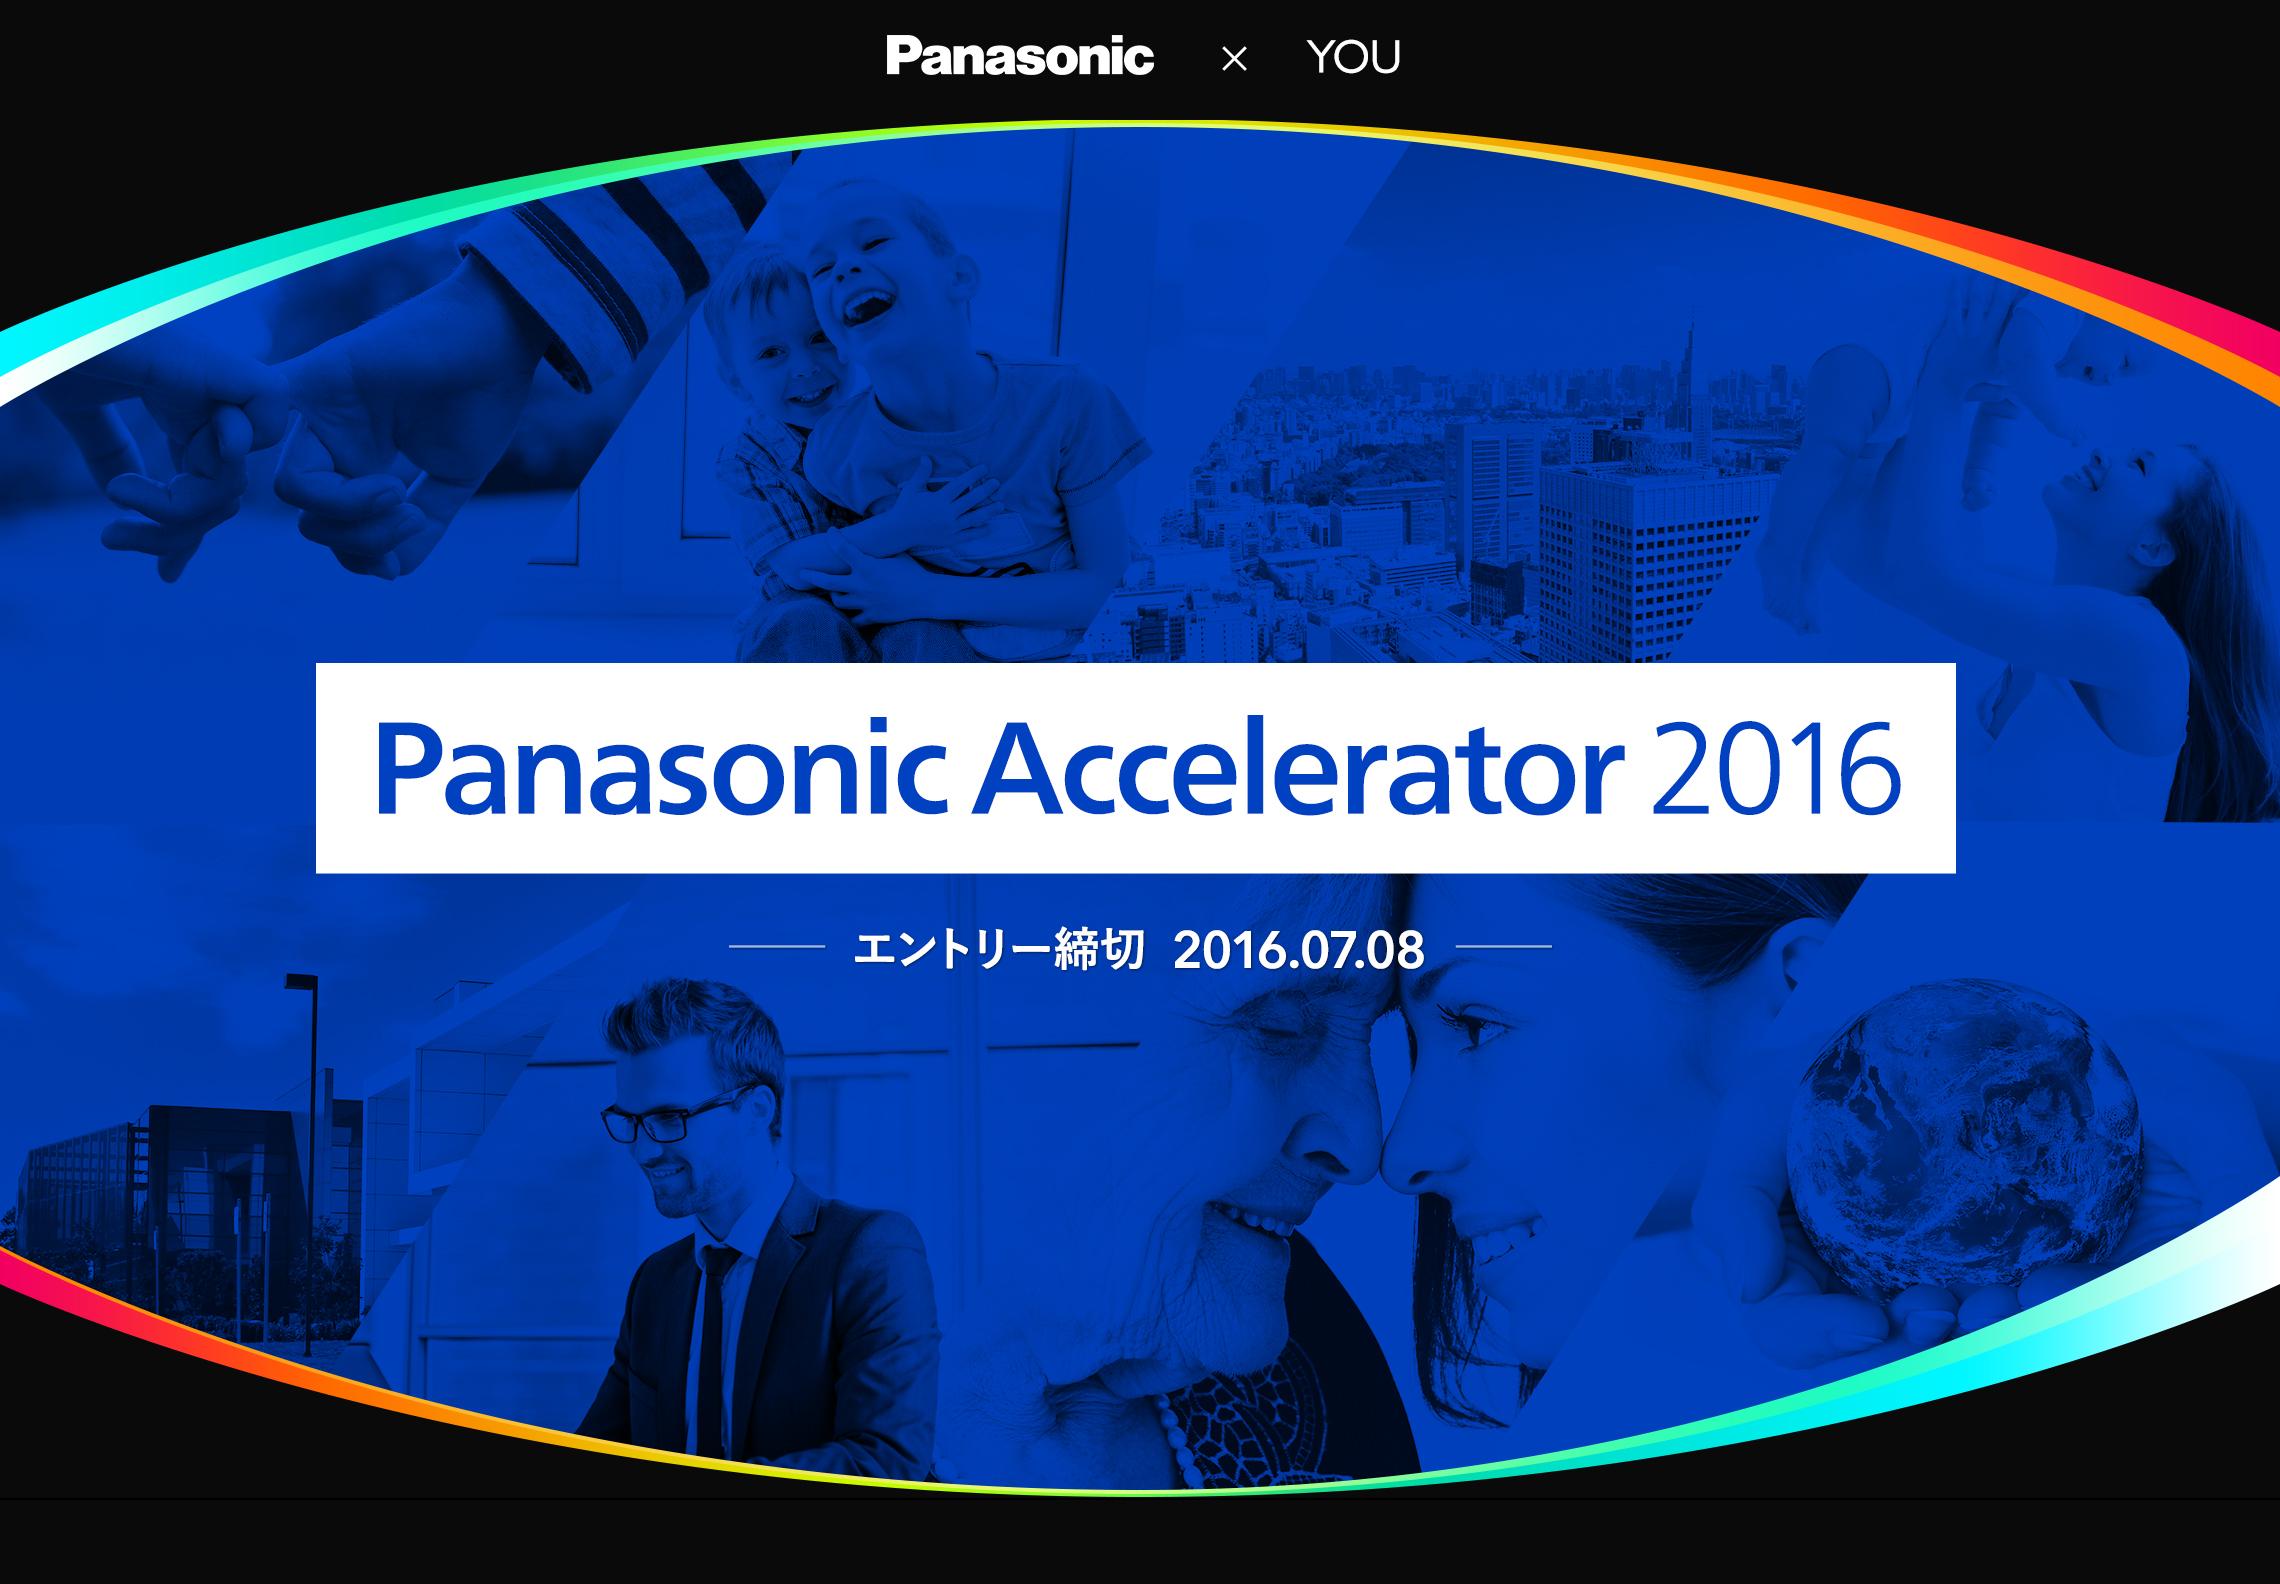 企業アクセラレータープログラム「Panasonic Accelerator 2016」を開始